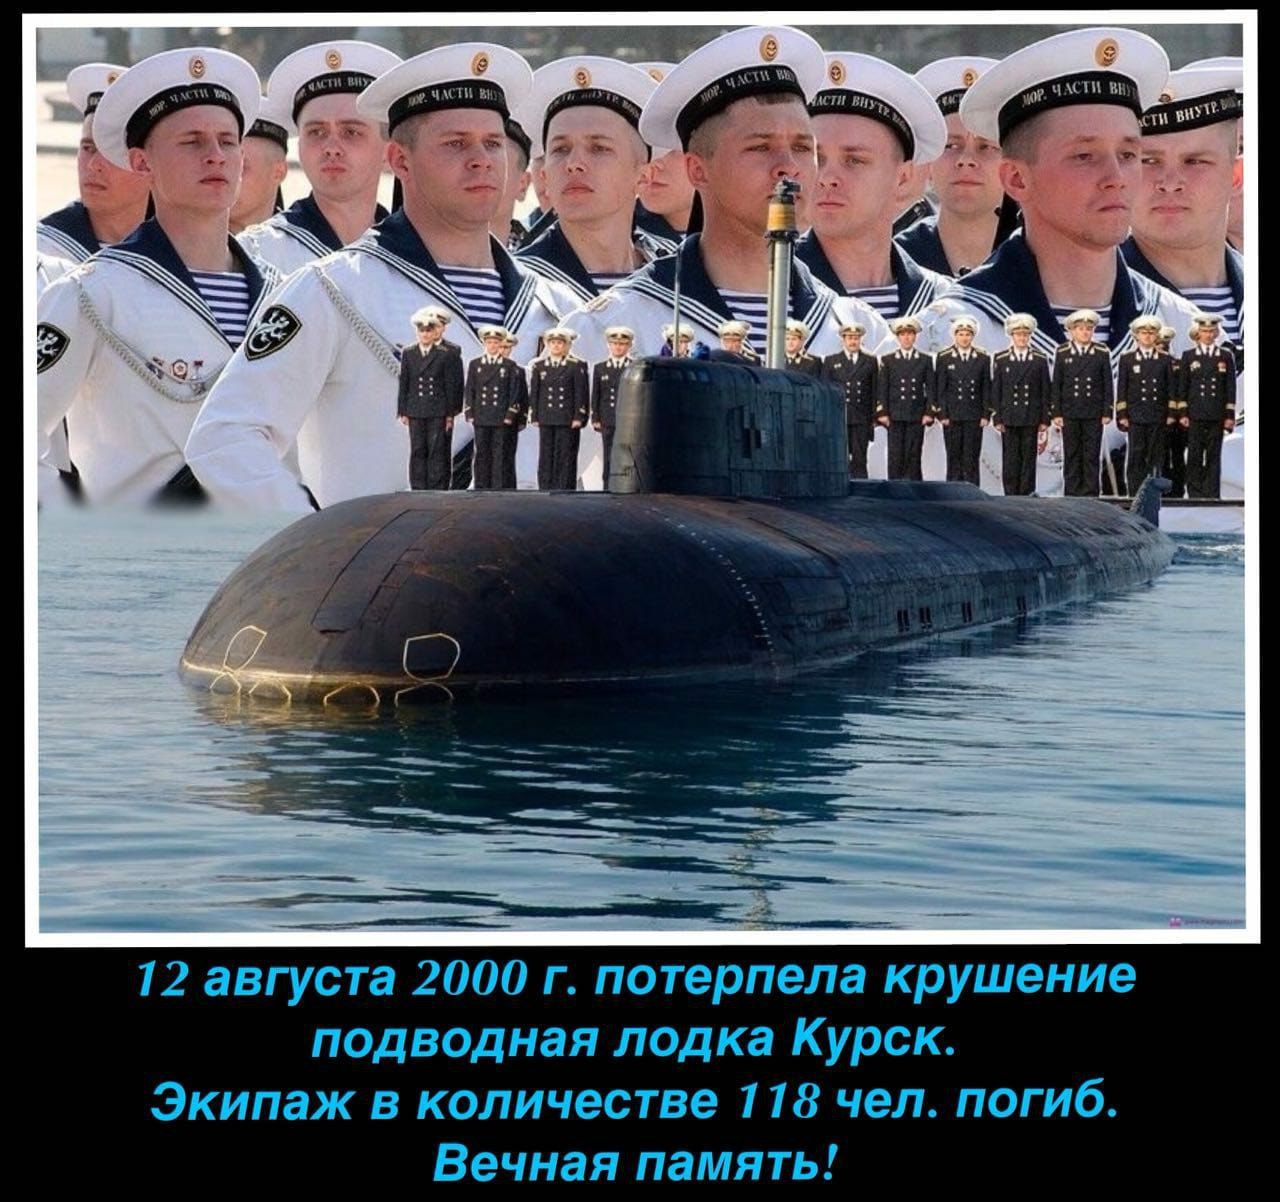 Курск после 11 класса. Подводная лодка к-141 «Курск». АПЛ Курск экипаж 2000. АПРК К 141 Курск экипаж. Память экипажа подводной лодки Курск.